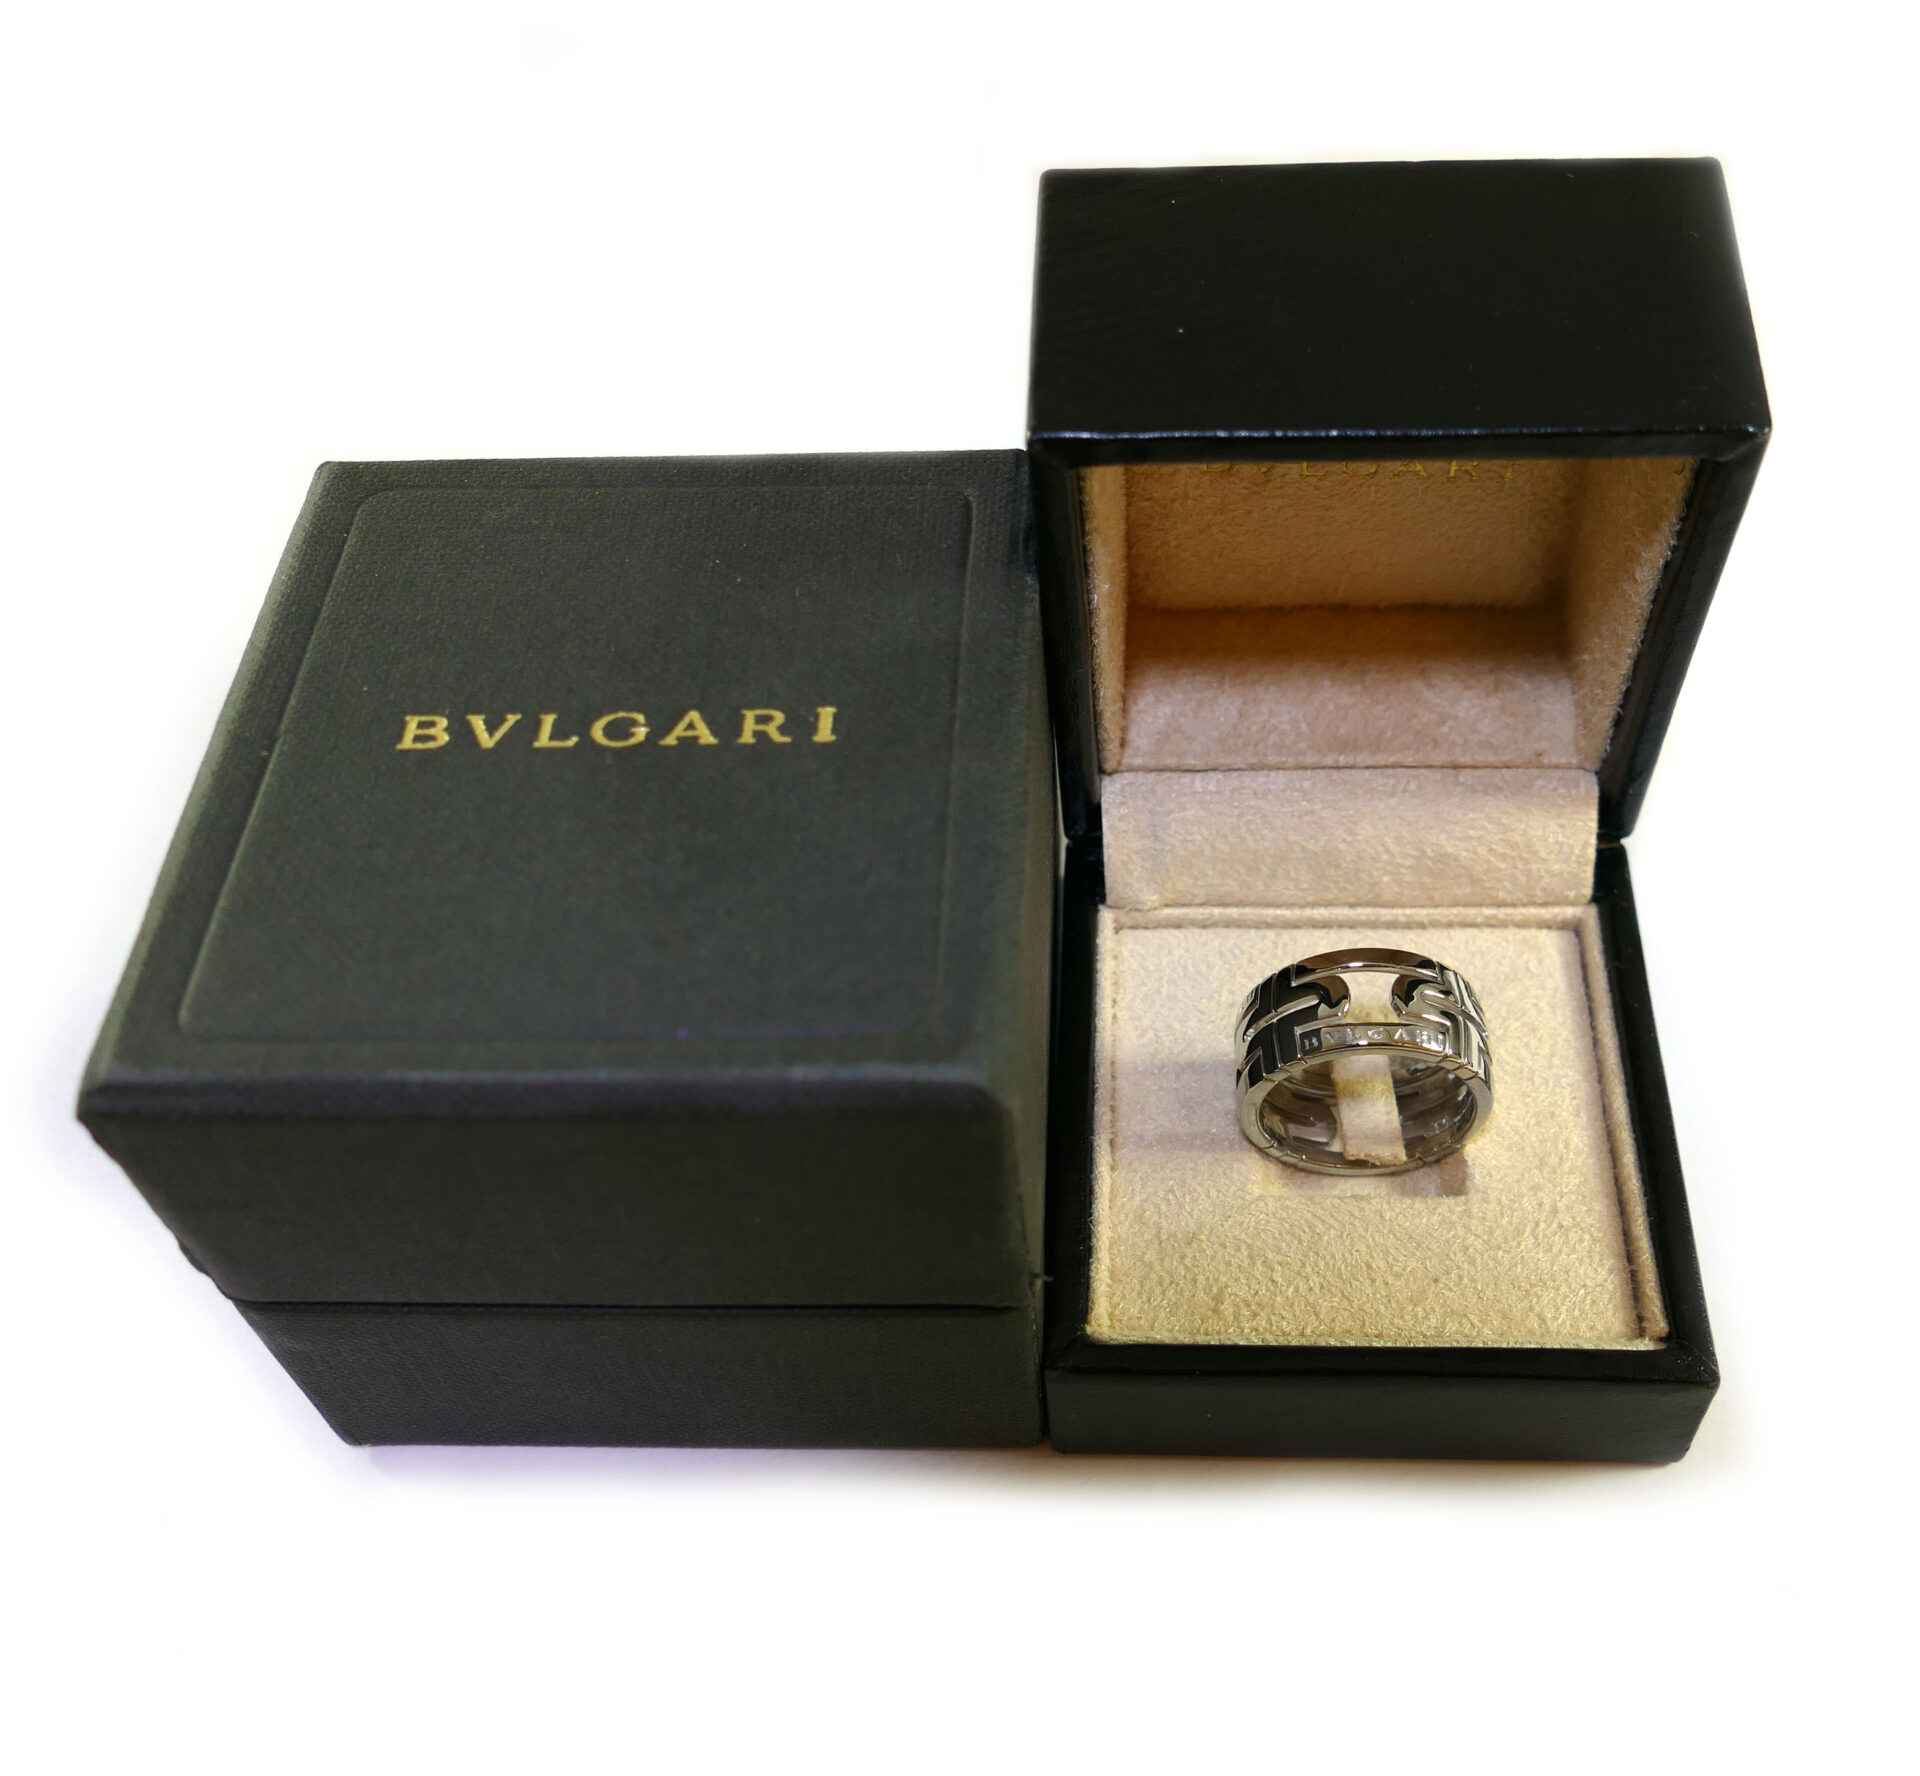 Bvlgari Parentesi Men's 18k White Gold Ring W/ Box - Size 63 (10) - 11 ...